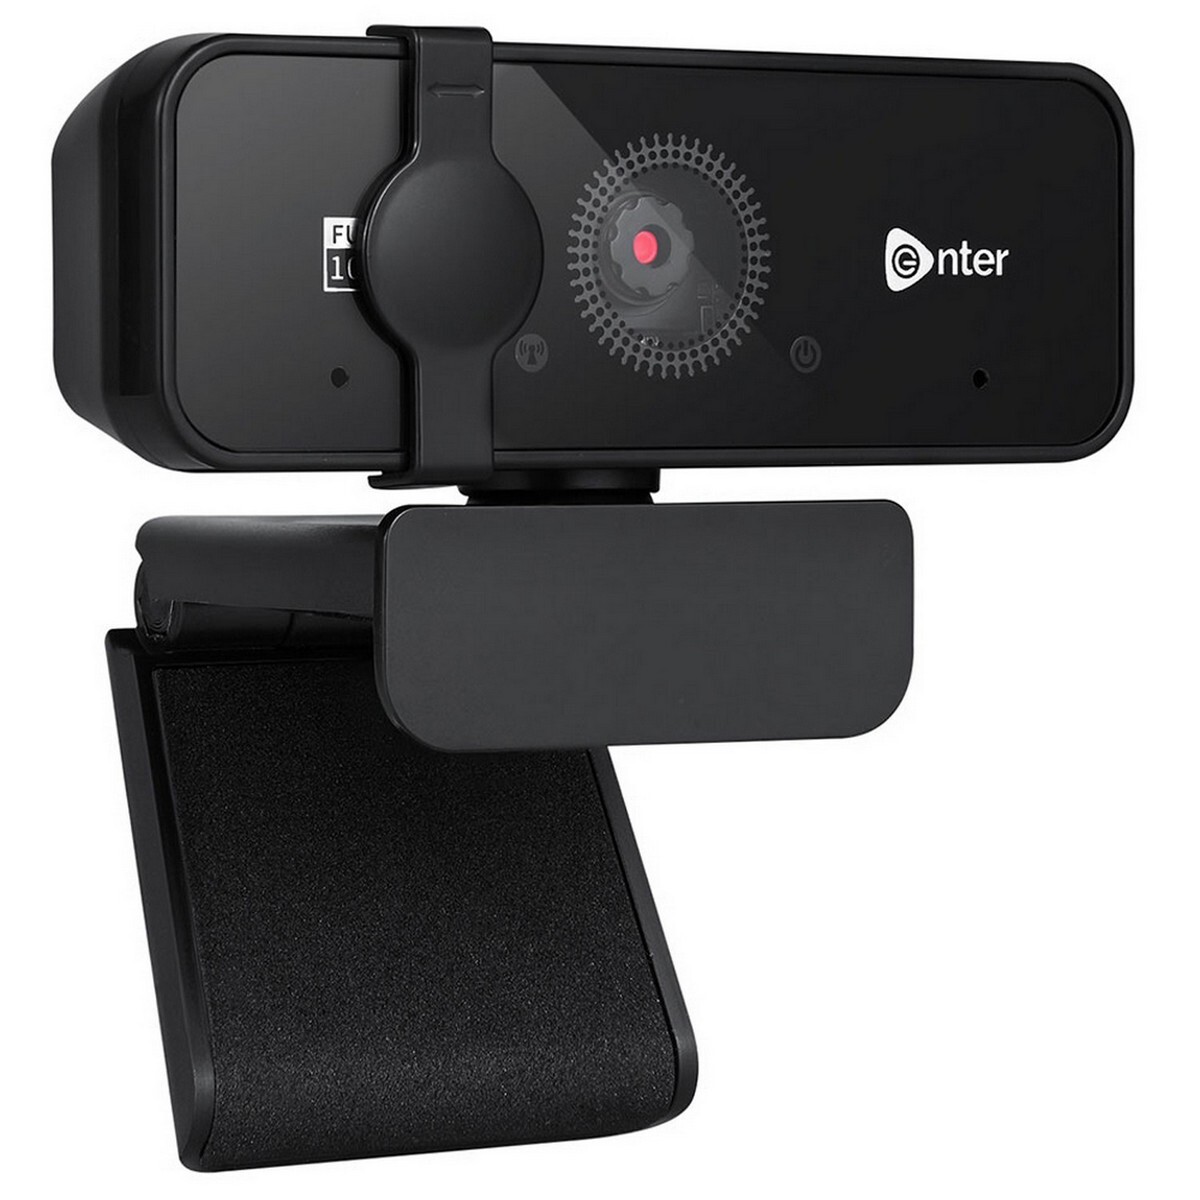 Enter Webcam Ultra HD 1080P